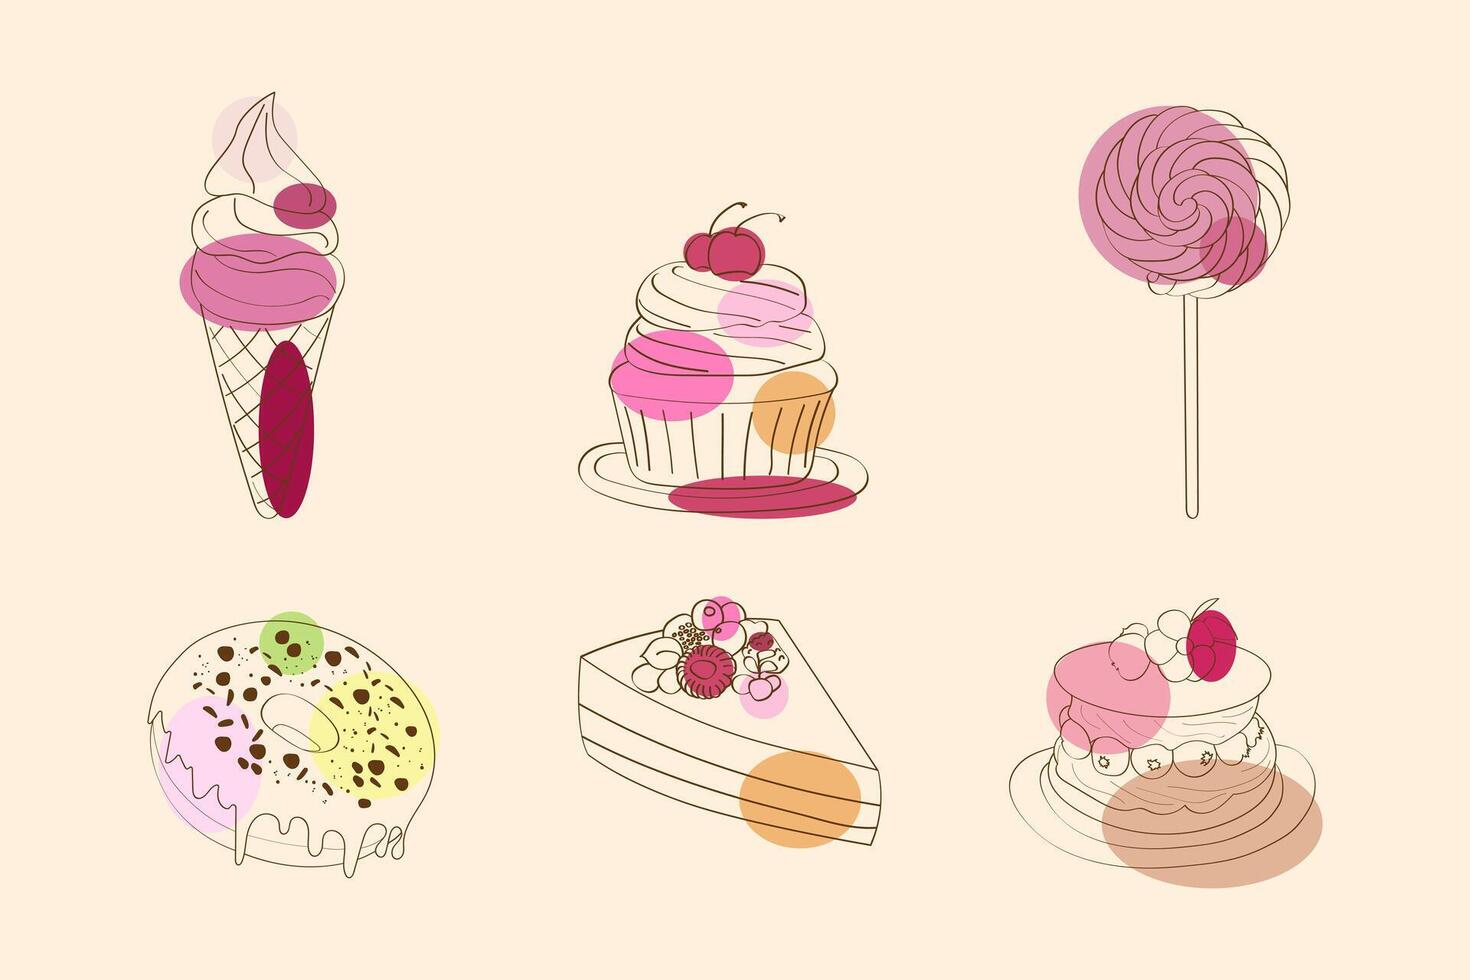 en mängd av kakor och klubbor är anordnad i en visa, visa upp annorlunda smaker, färger, och mönster. från klassisk vanilj kakor till choklad klubbor vektor